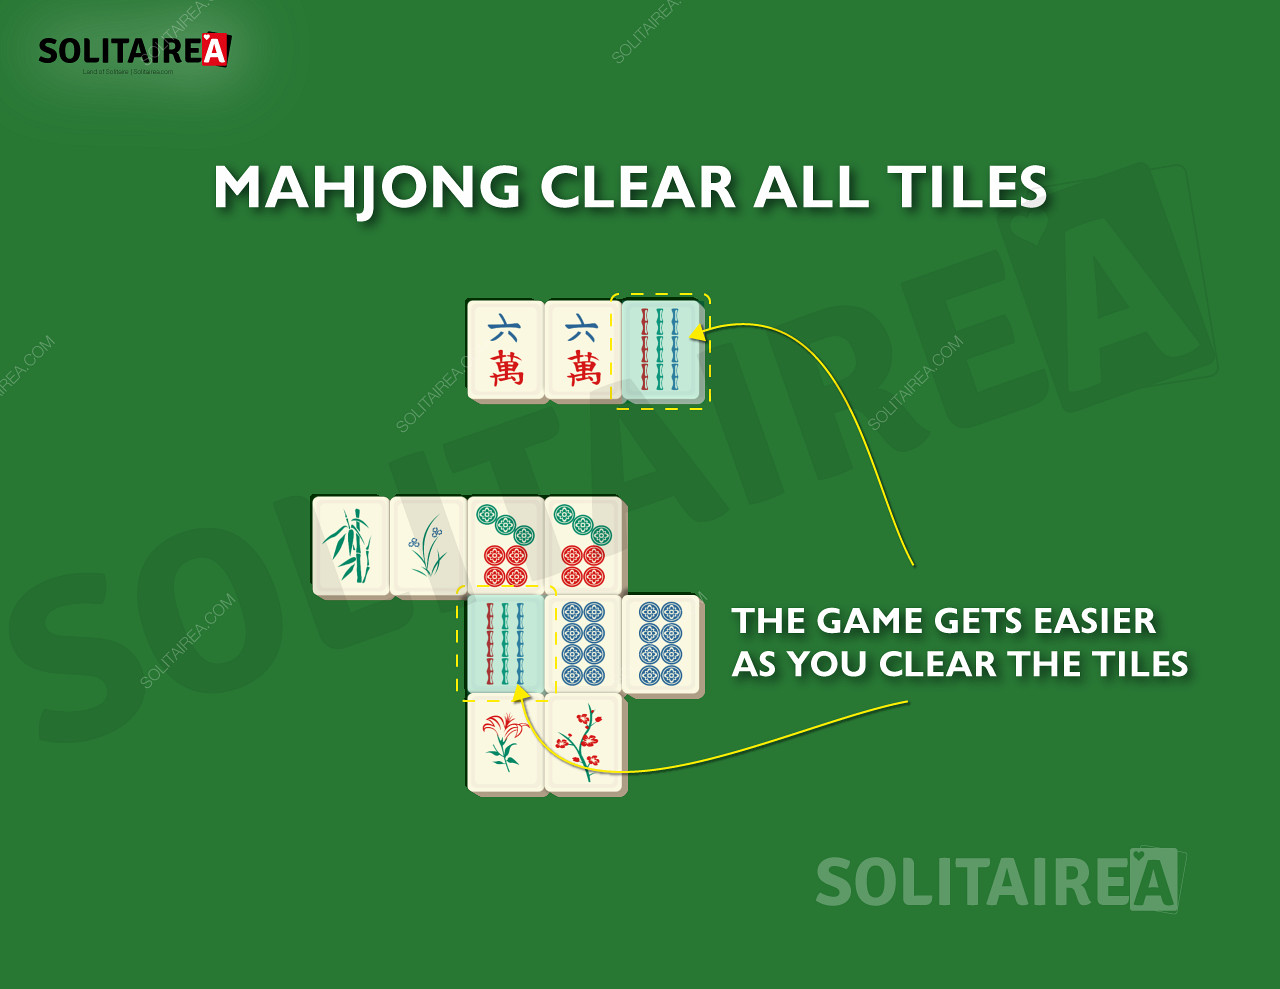 Au fur et à mesure que vous progressez, il reste de moins en moins de tuiles à éliminer dans le jeu Mahjong Solitaire.